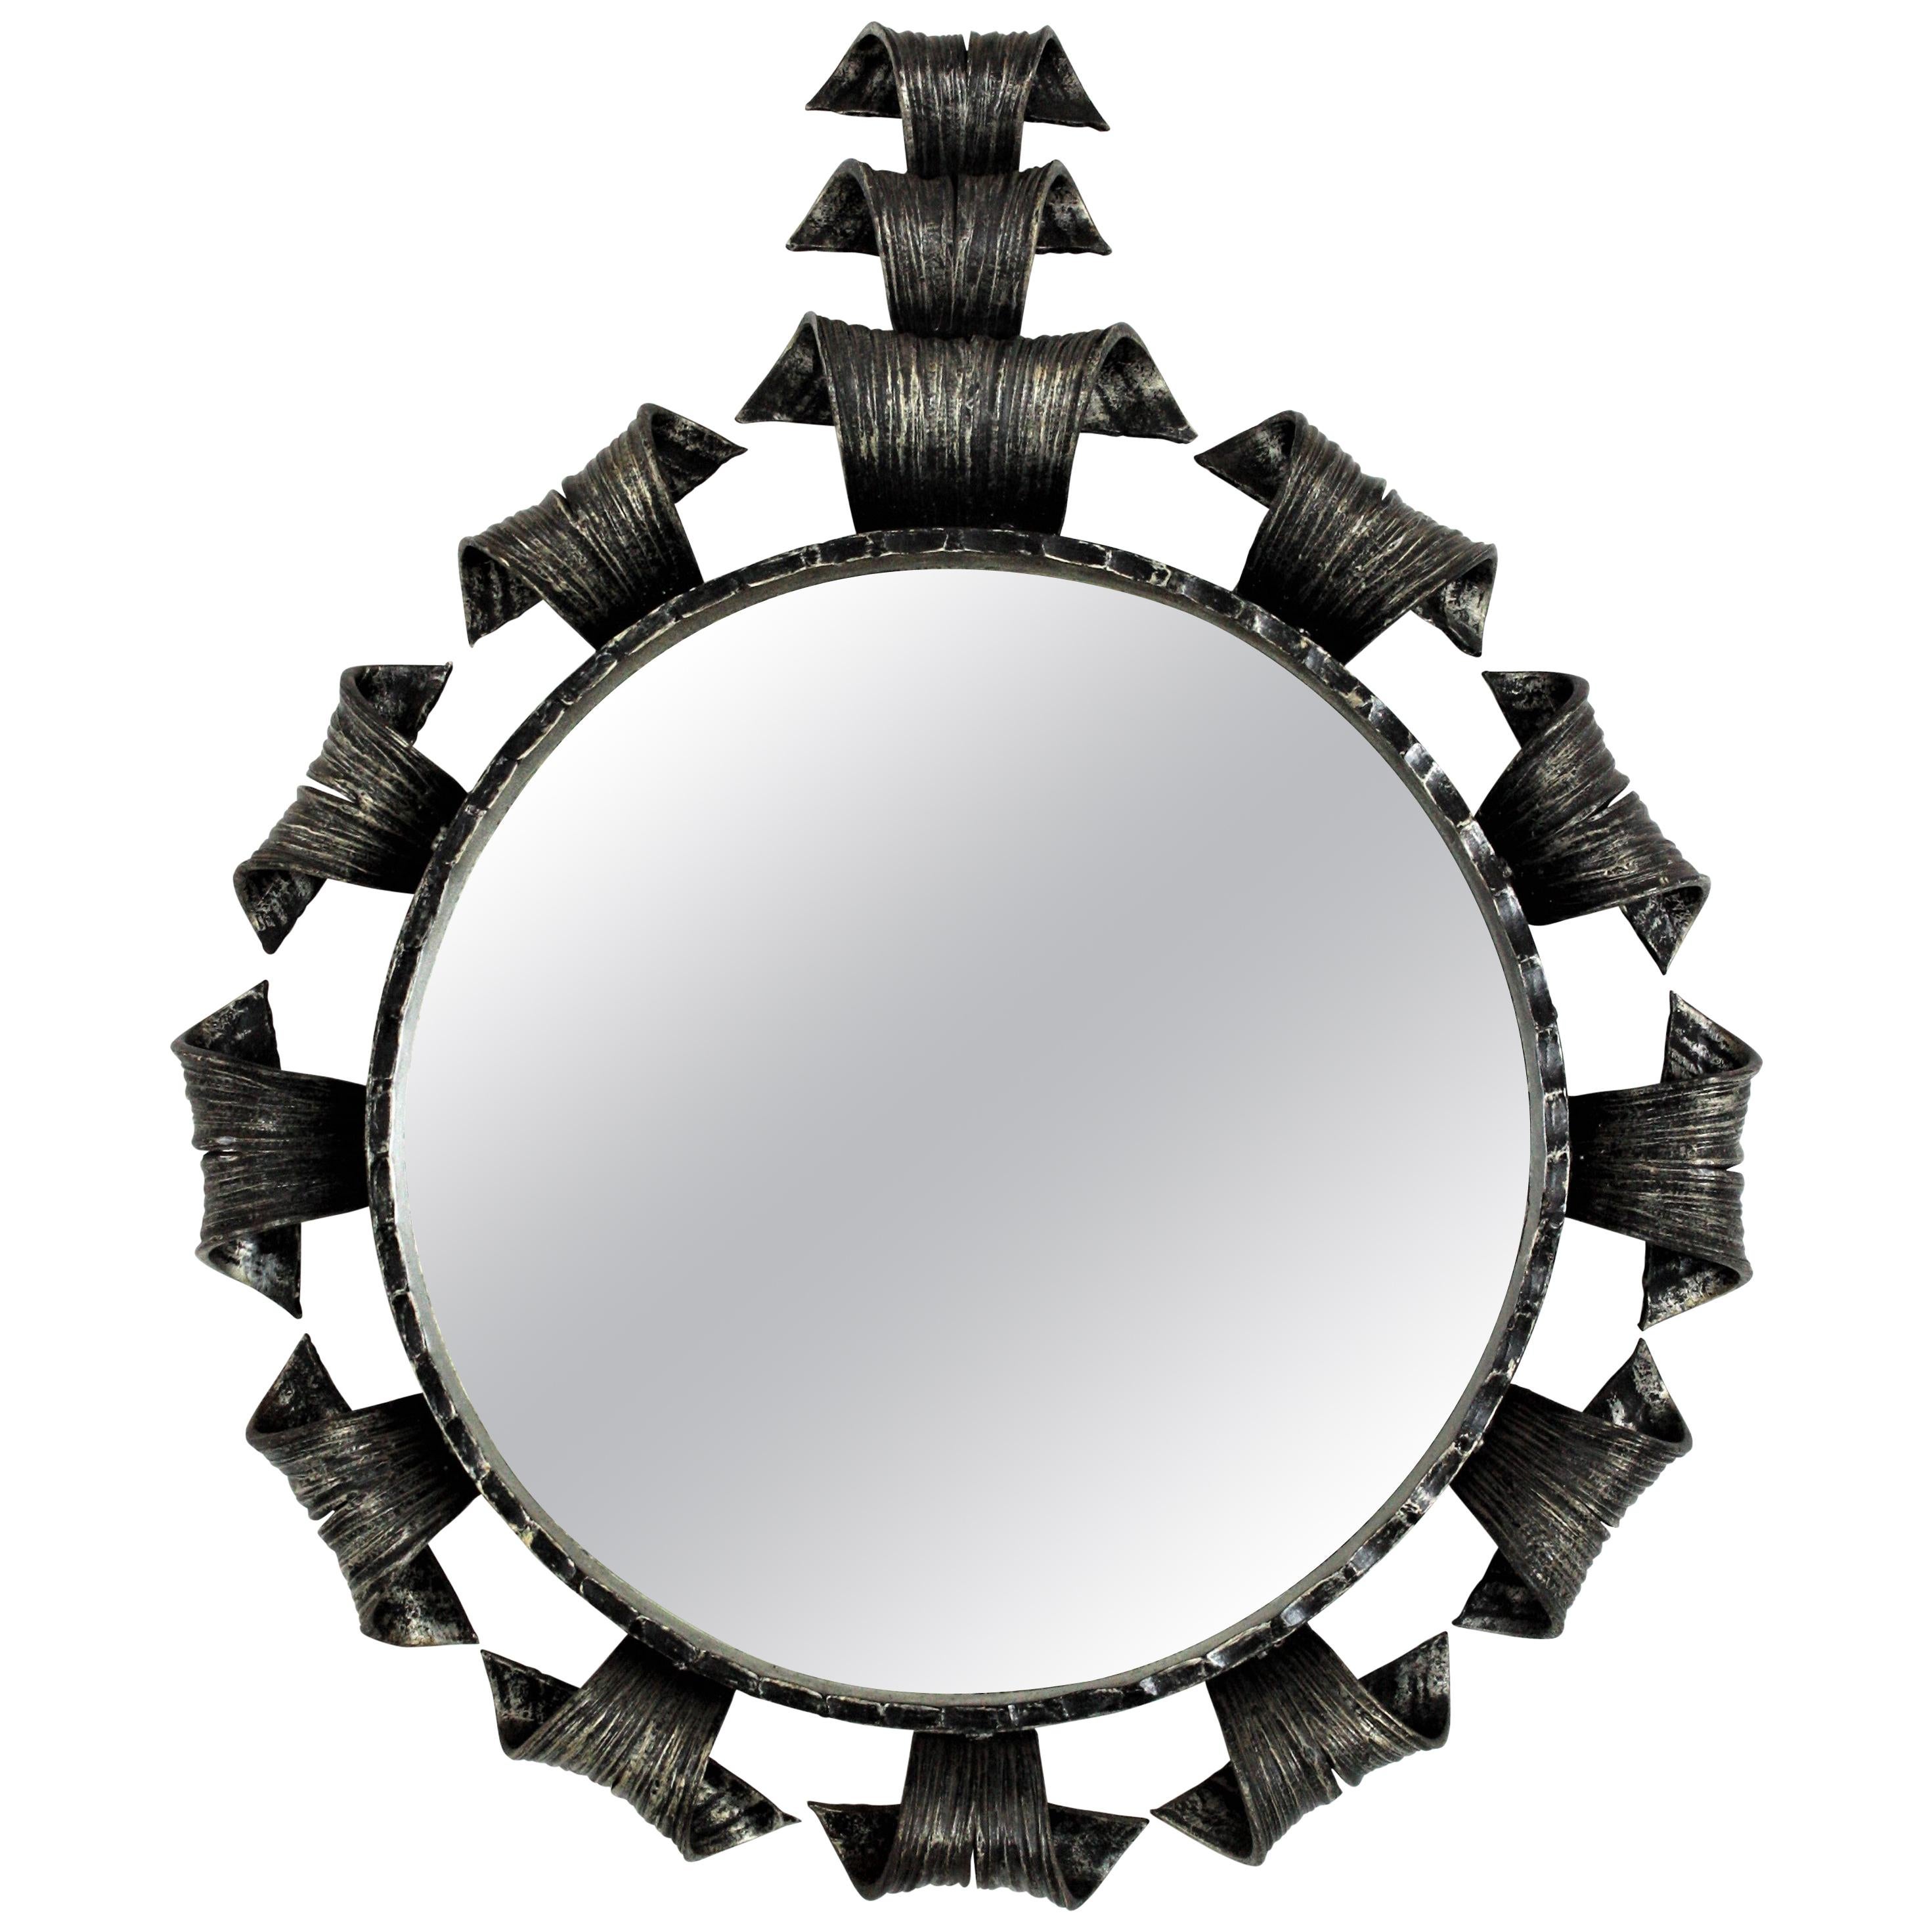 Sunburst Brutalist Mirror in Wrought Iron